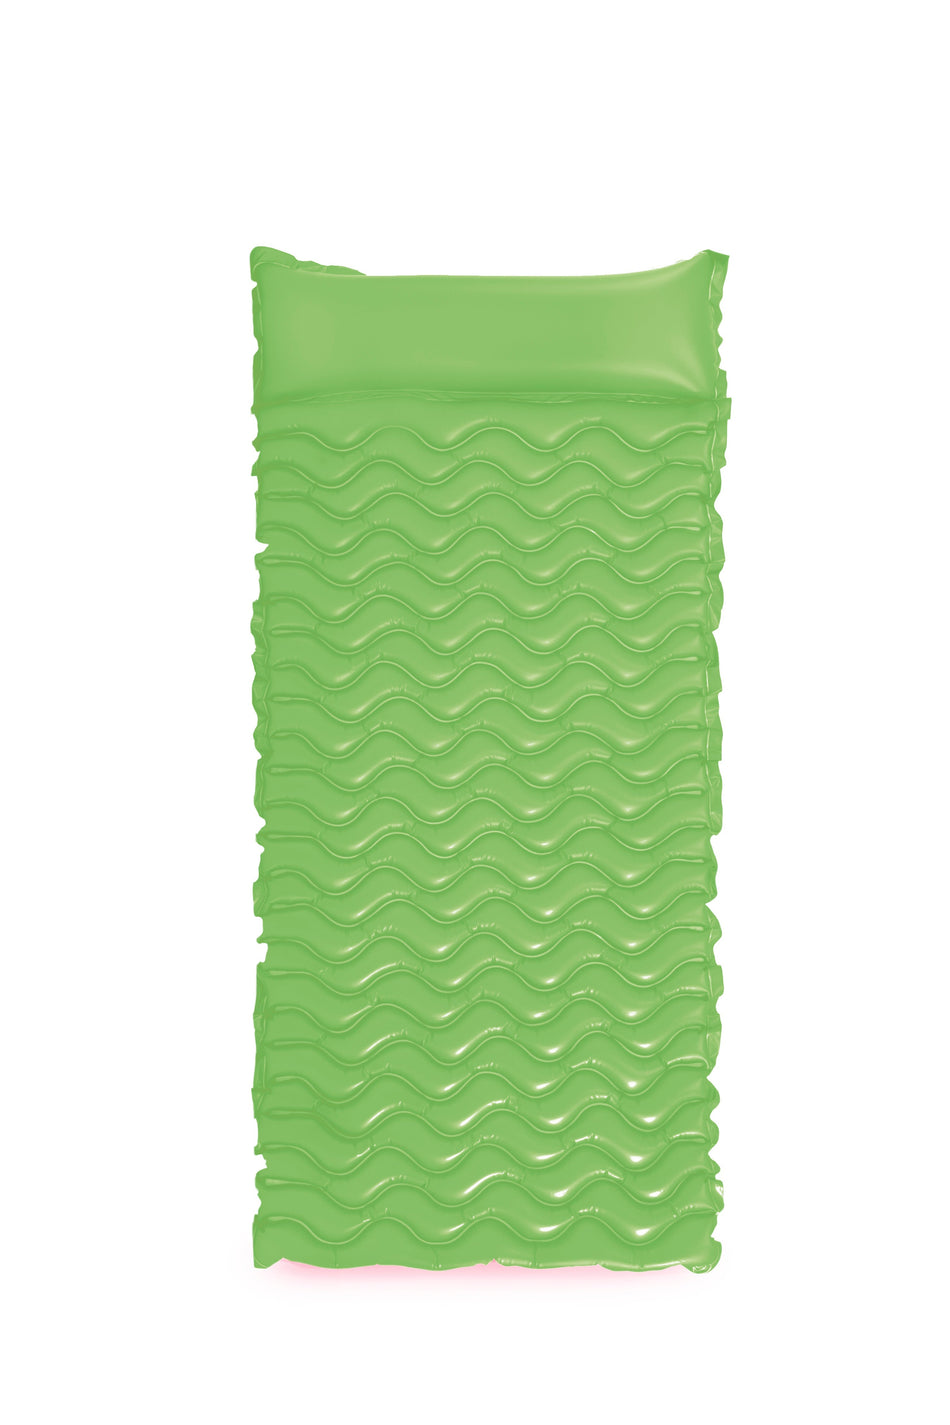 Materasso ad aria Intex 229 cm x 86 cm - Verde